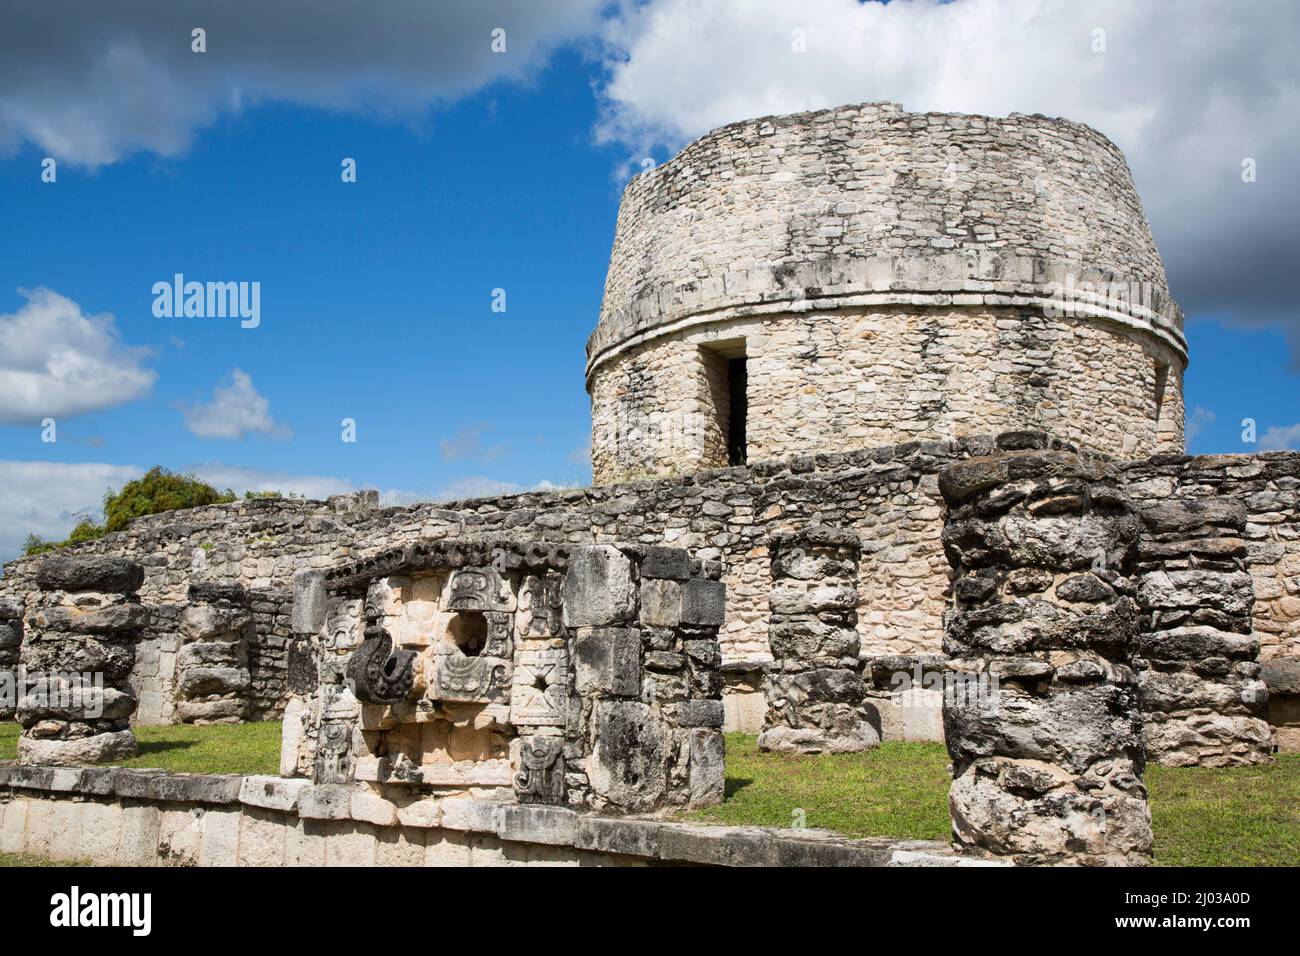 Chac Maske im Vordergrund, runder Tempel im Hintergrund, Maya Ruinen, Mayapan Archäologische Zone, Yucatan Staat, Mexiko, Nordamerika Stockfoto